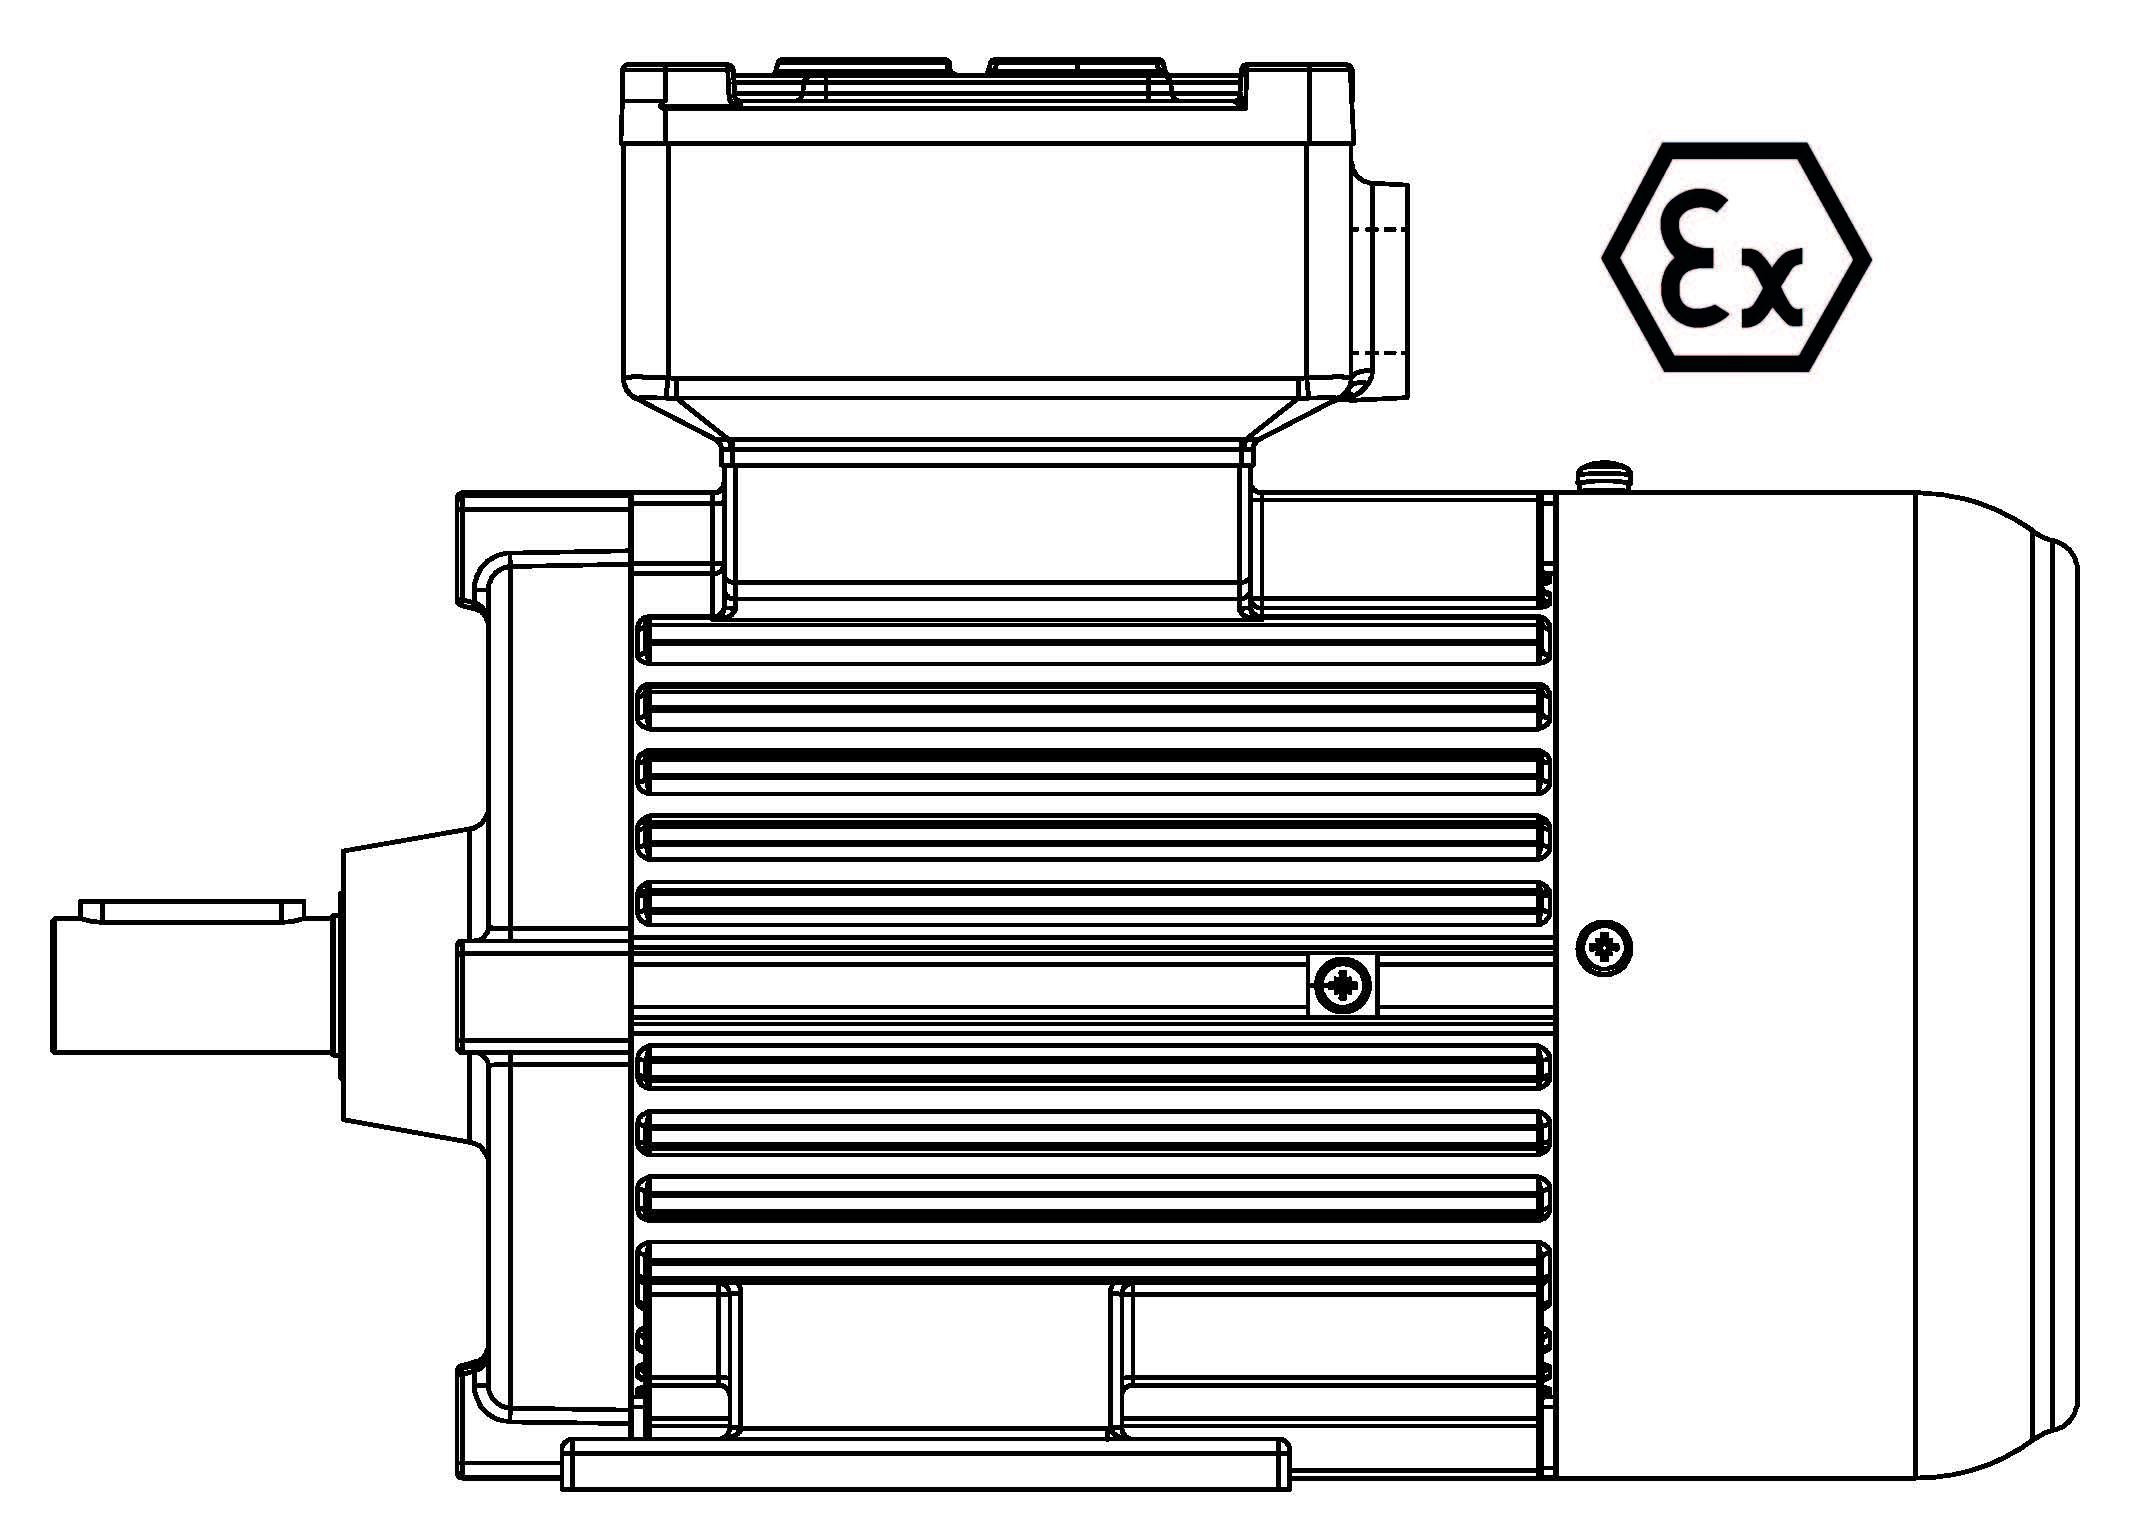 ATEX-180-2P 22 B3 400/3/50 Ex d IIB Эл.двигатель B3, разм. 180, 2900 об/мин, 22 кВт, 400 В, 3ф, 50 Гц